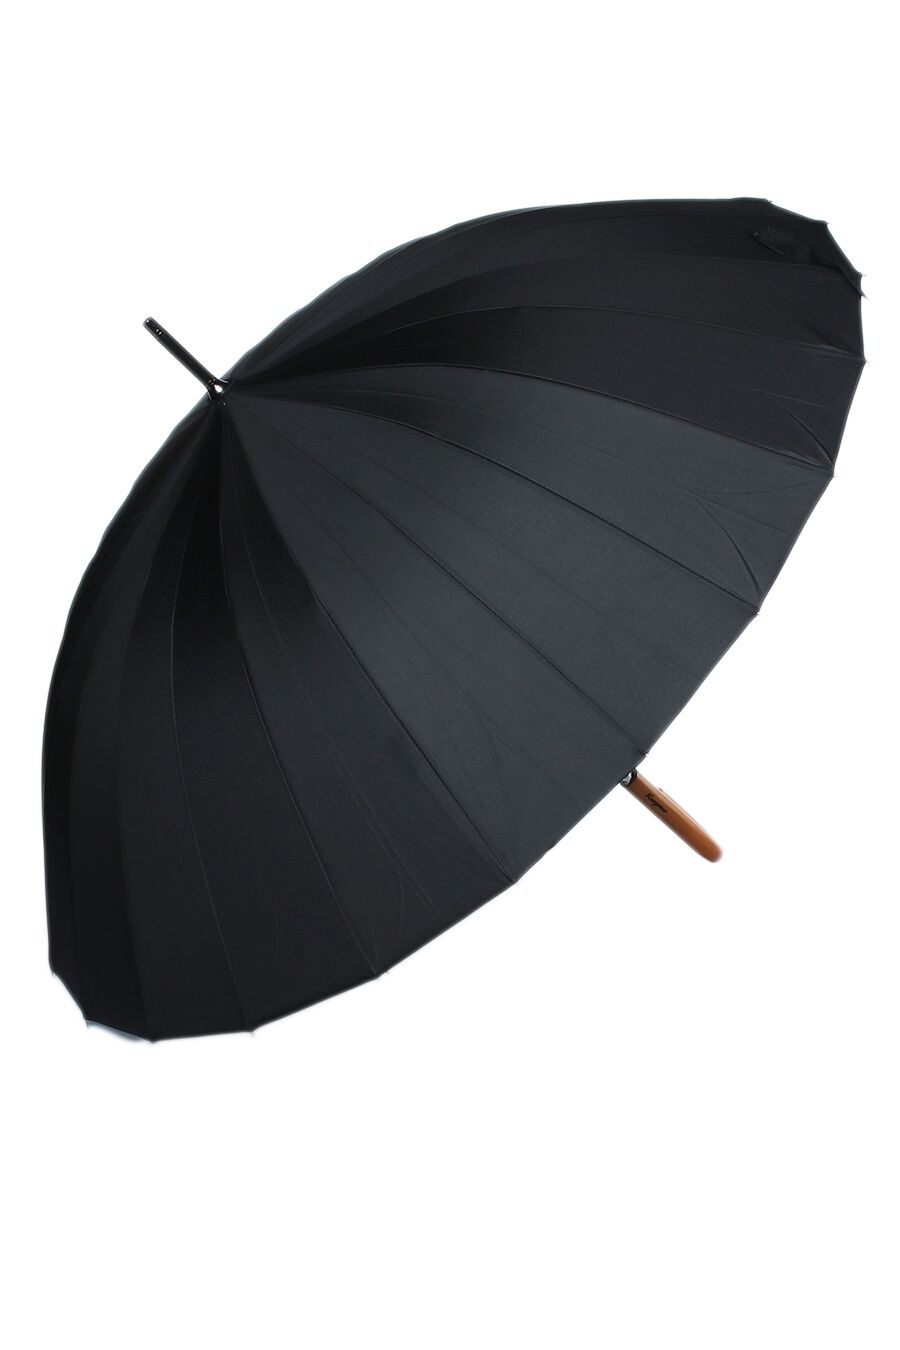 Зонт муж. Kang D0029 полуавтомат трость (черный)